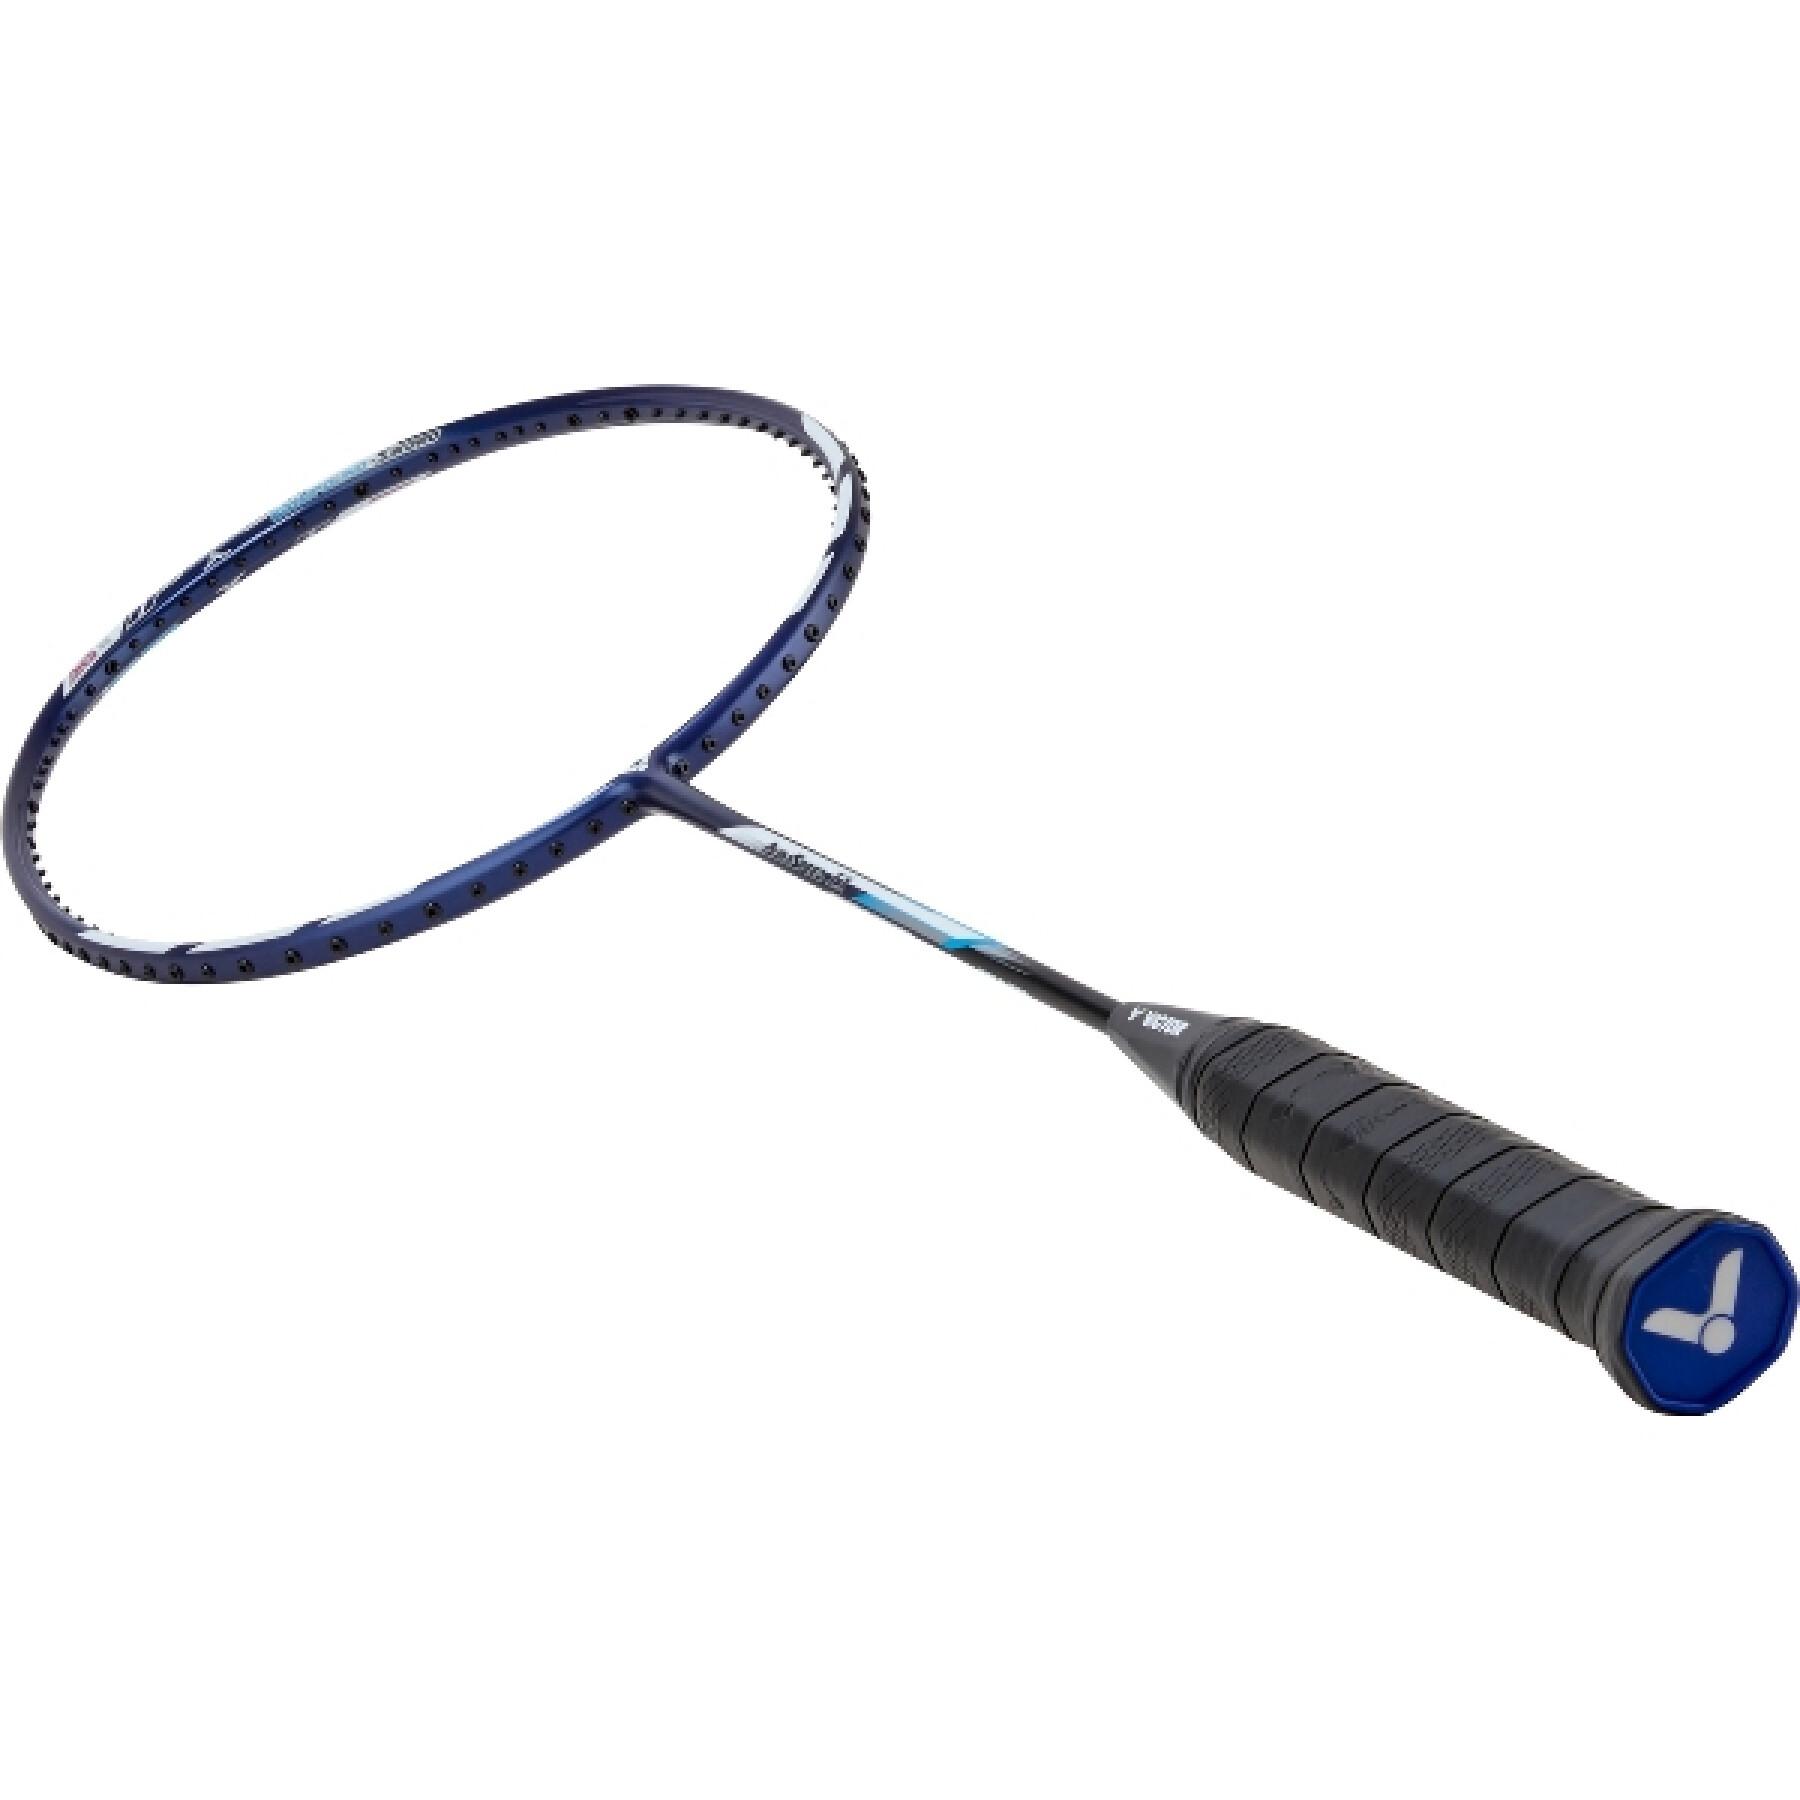 Raquete de Badminton Victor Auraspeed 11 B